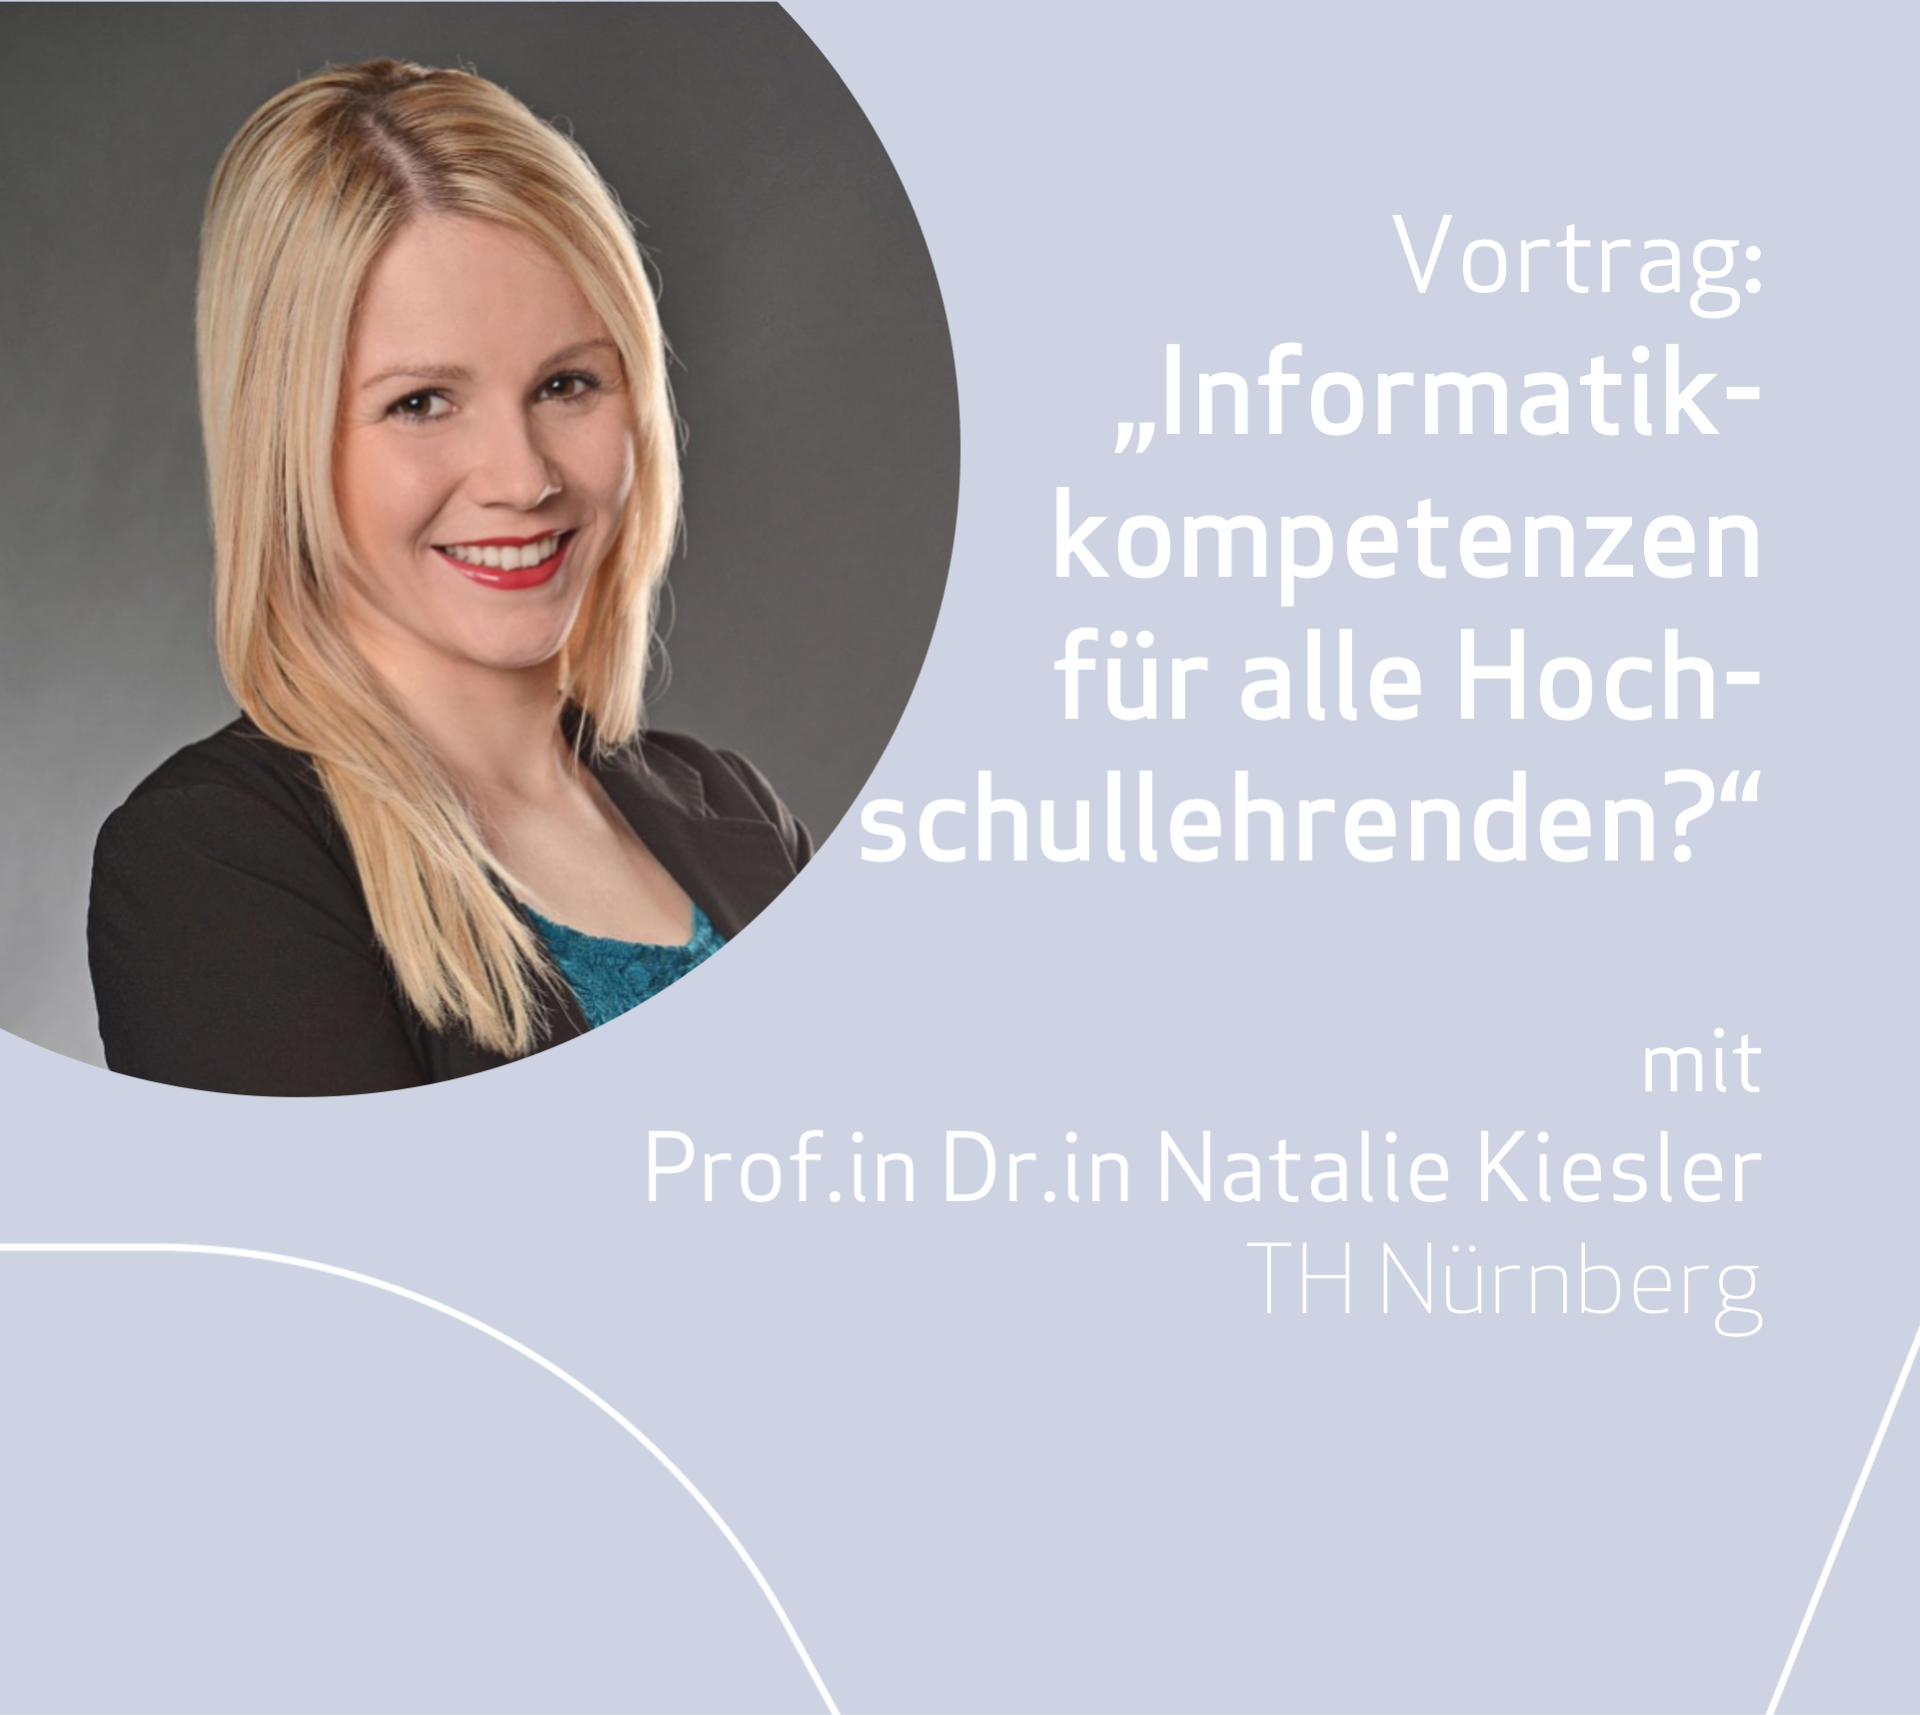 Keynote von Prof.in Dr.in Natalie Kiesler: "Informatikkompetenzen für alle Hochschullehrenden?"